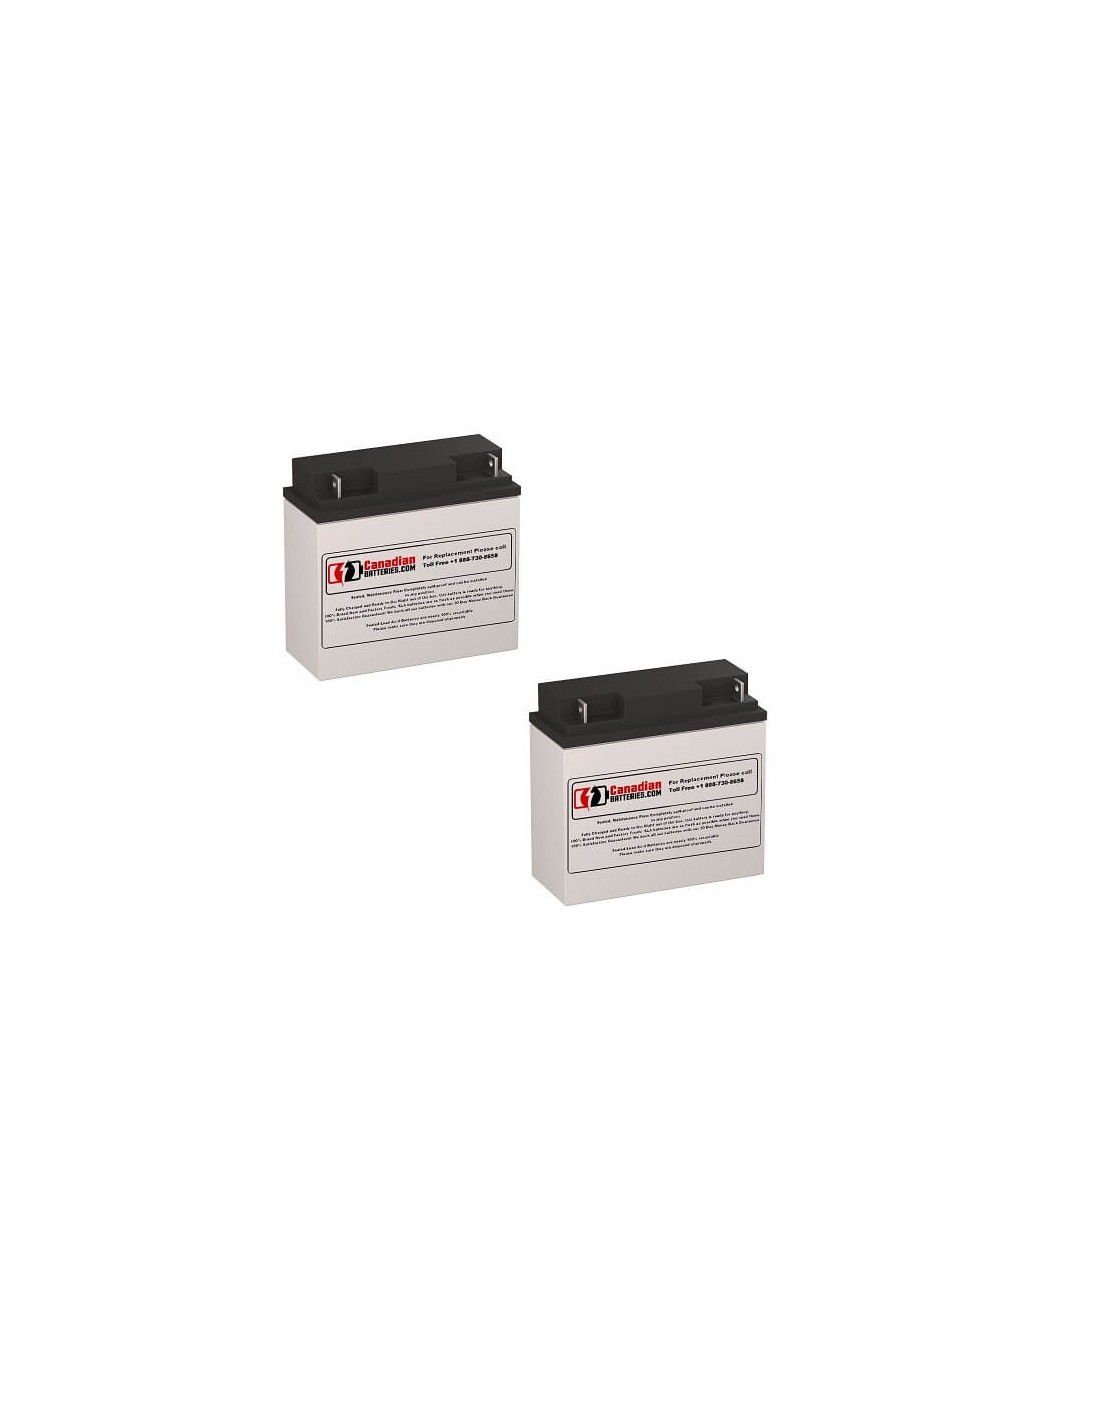 Batteries for Belkin Pro Netups F6c100-4 UPS, 2 x 12V, 18Ah - 216Wh